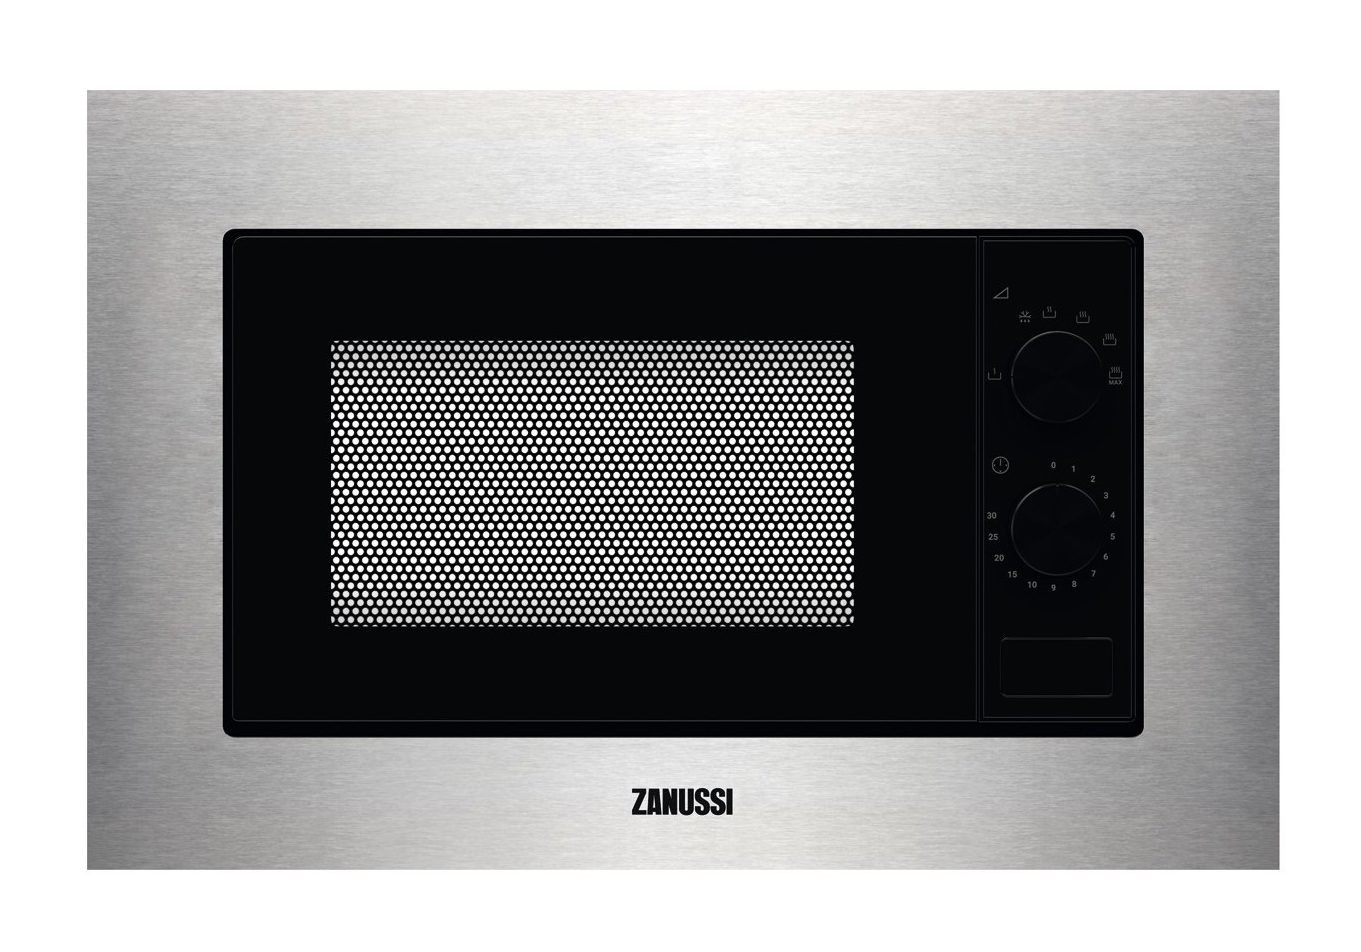 Микроволновая печь Zanussi ZMSN5SX в интернет-магазине, главное фото